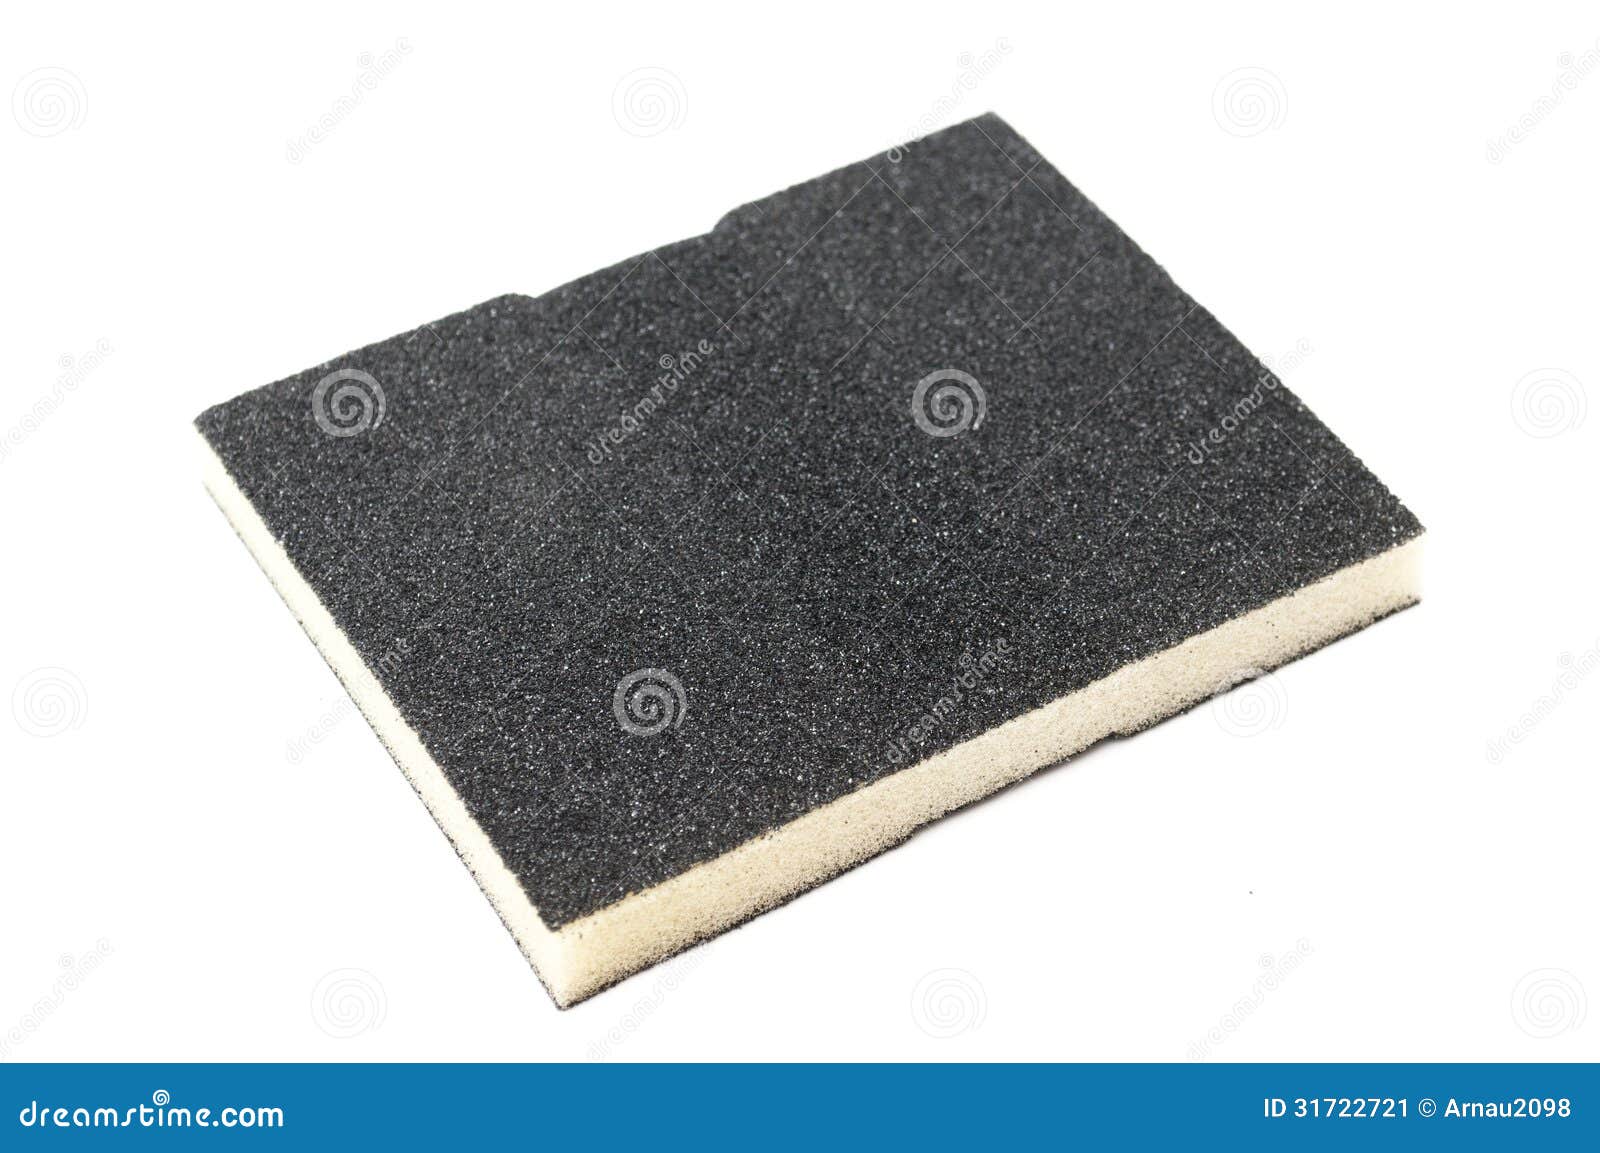 sanding sponge